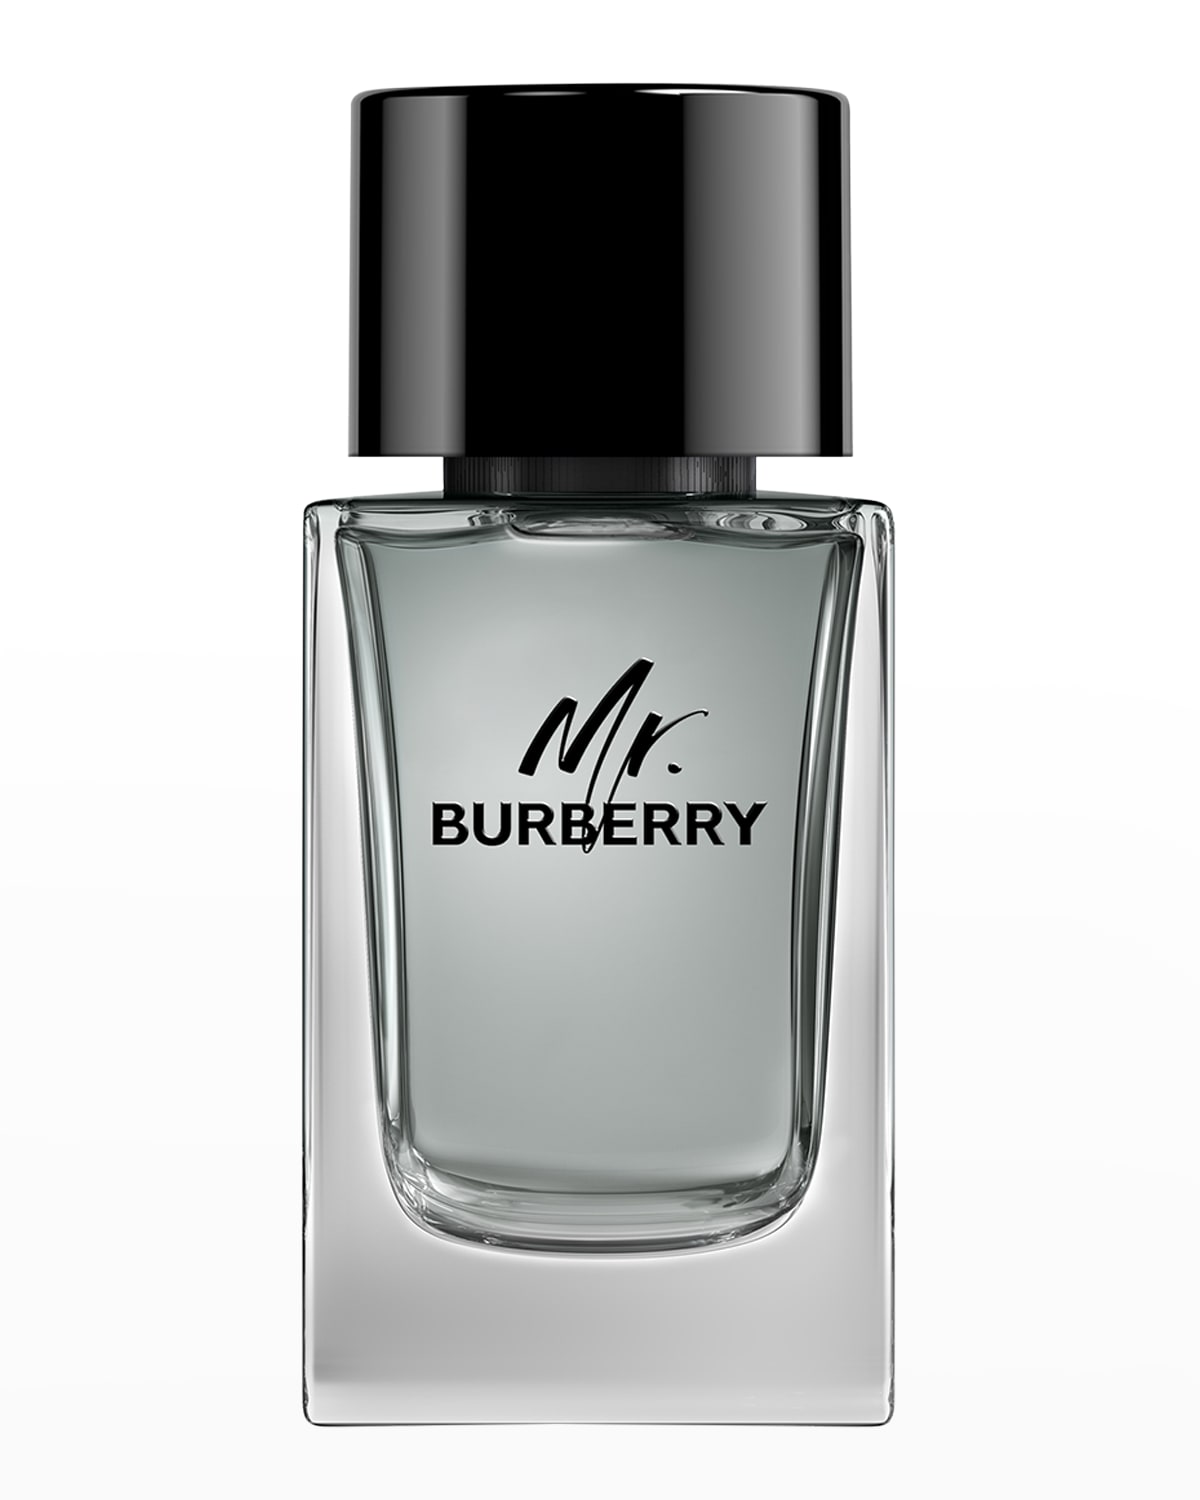 Burberry 3.4 oz. Mr. Burberry Eau de Toilette Spray